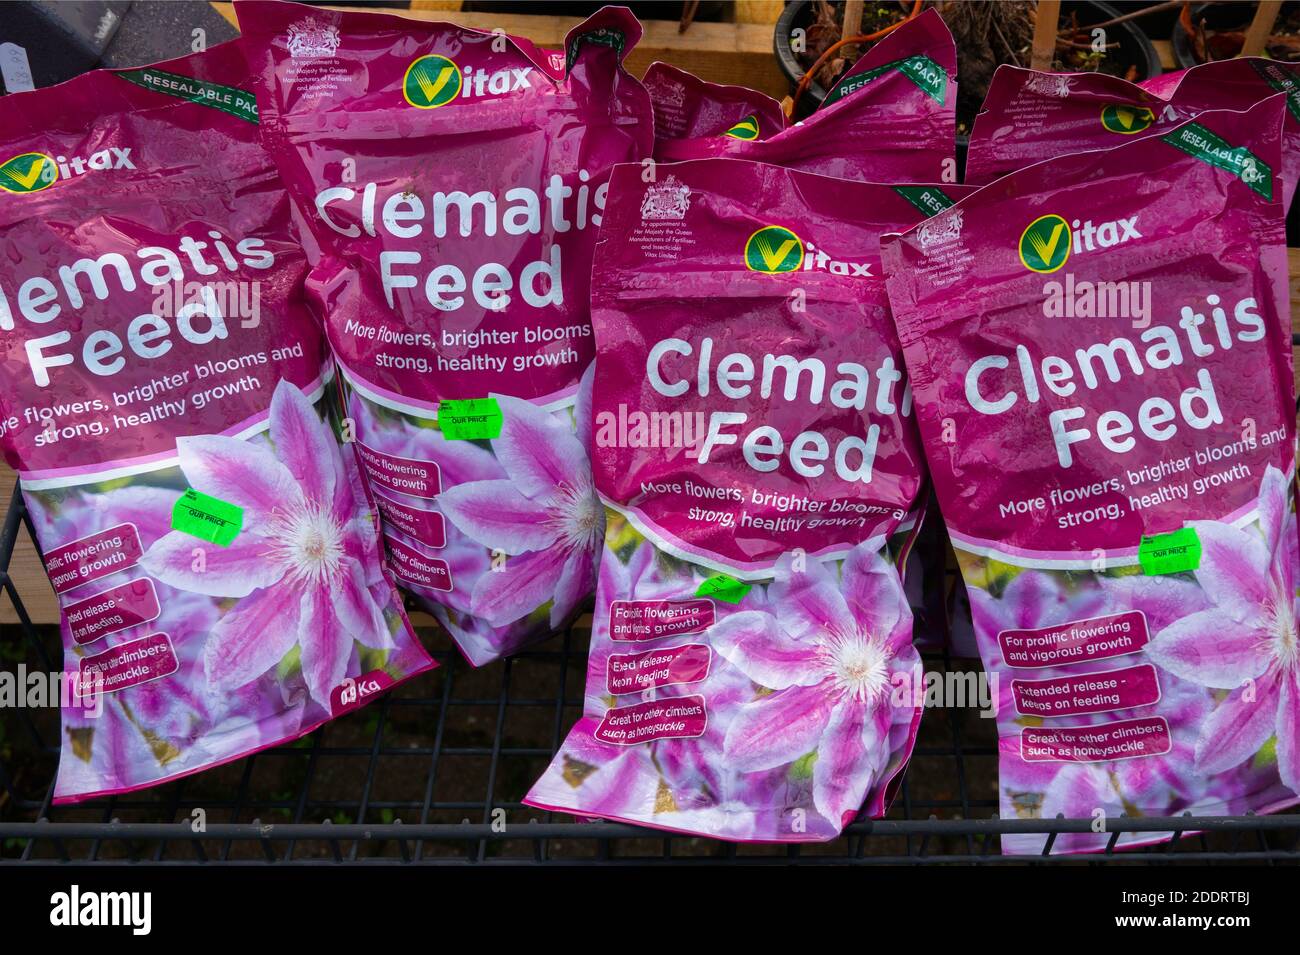 Vitax Marca Clematis alimentación que ofrece más flores flores más brillantes y floraciones fuerte crecimiento saludable Foto de stock